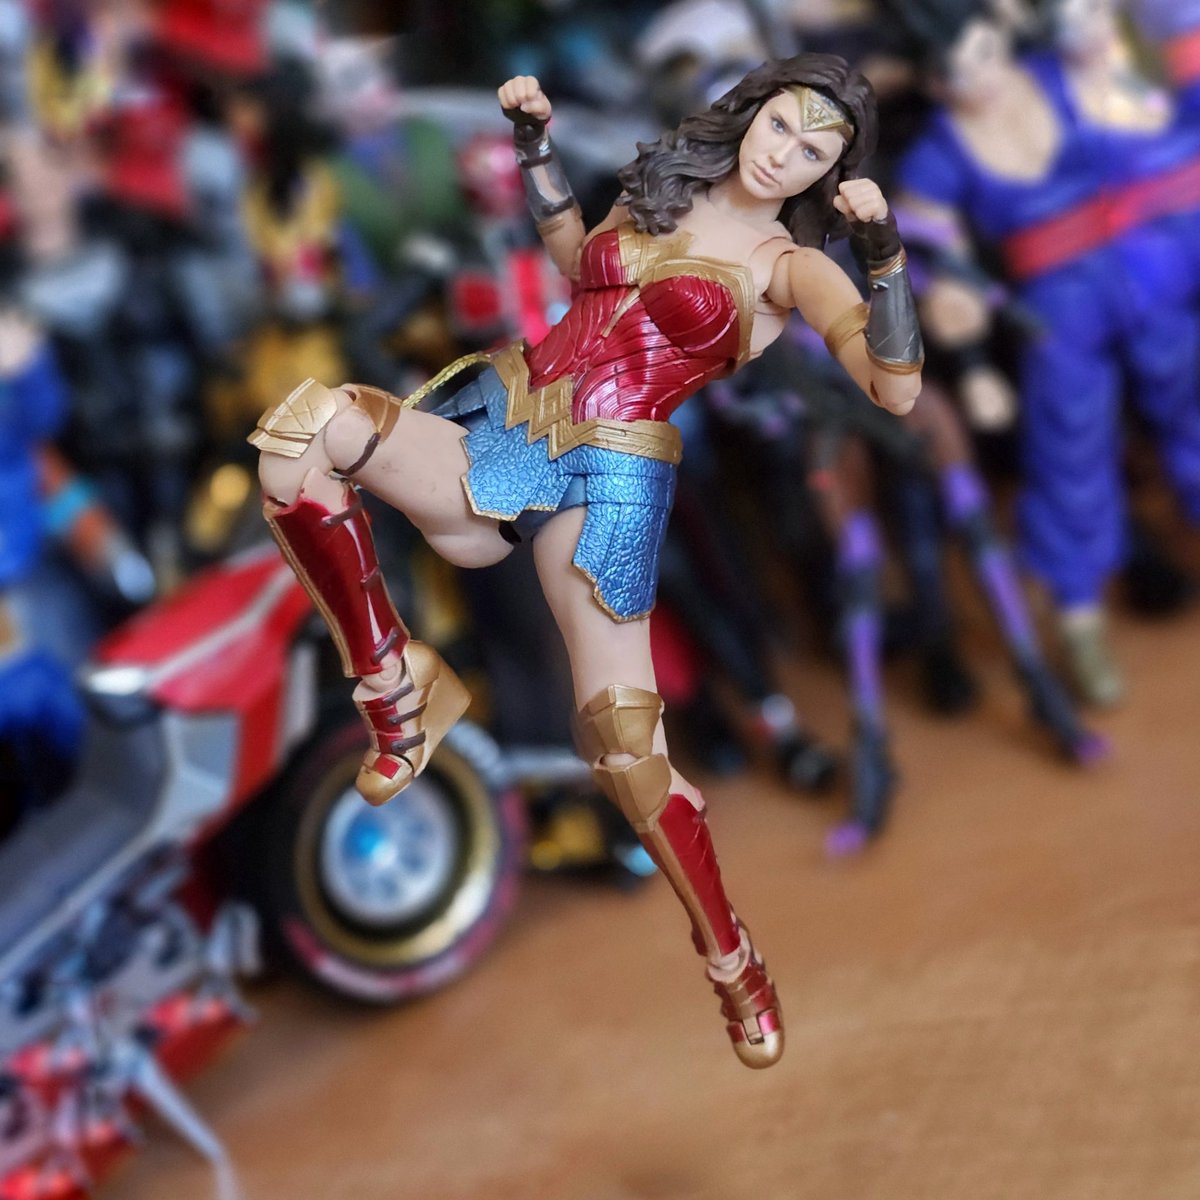 Wonder Woman

#ww1984 #dianaprince #wonderwoman #toypic_comunity #toyphotography #actionfigurephotography #actionfigureaddict #actionfigurenation #toyartistry #toydiscovery #toydiscovery2 #toytalk #actionfigurenation #actionfigurecommunity